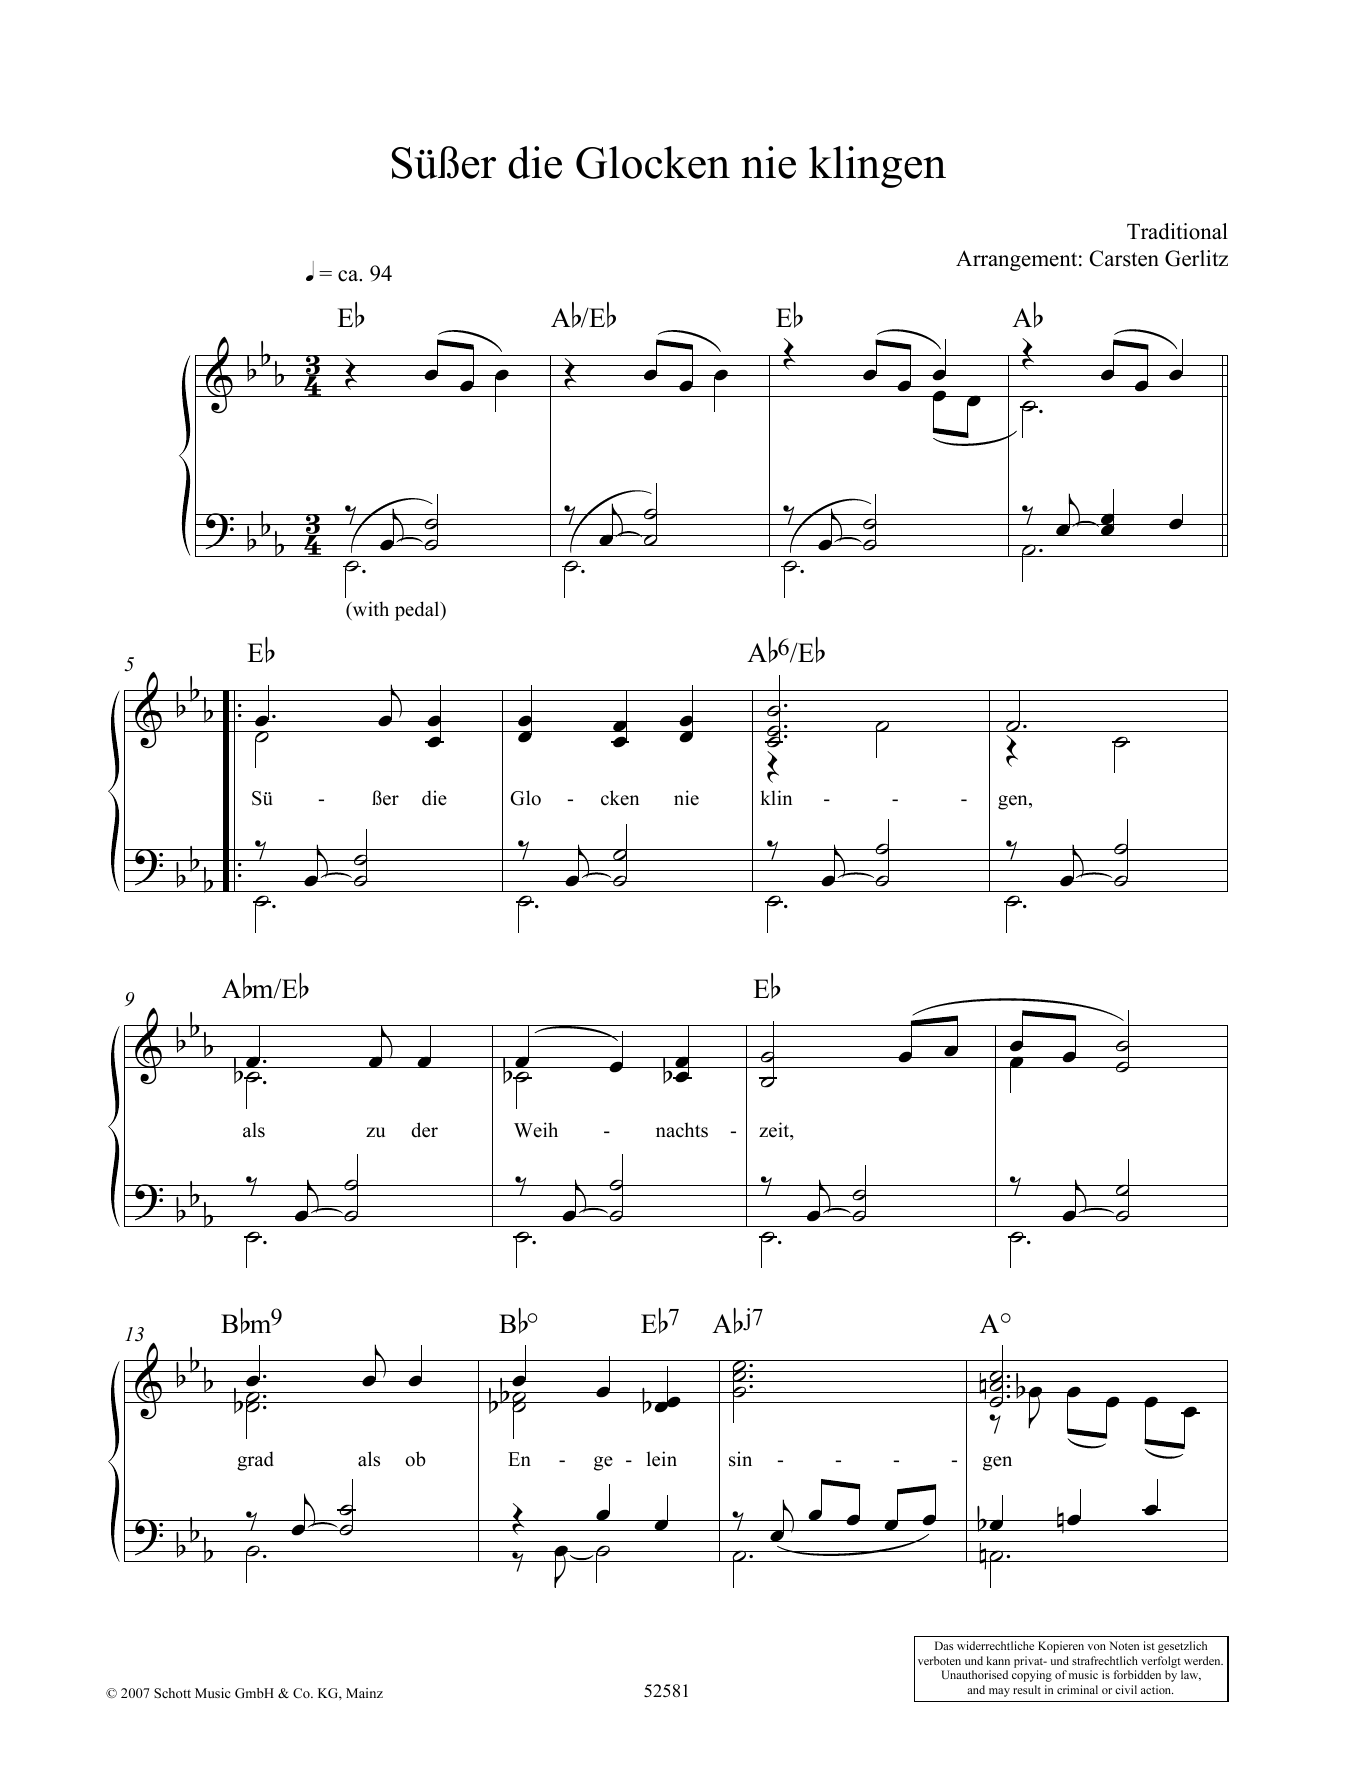 Carsten Gerlitz Susser die Glocken nie klingen Sheet Music Notes & Chords for Piano Solo - Download or Print PDF